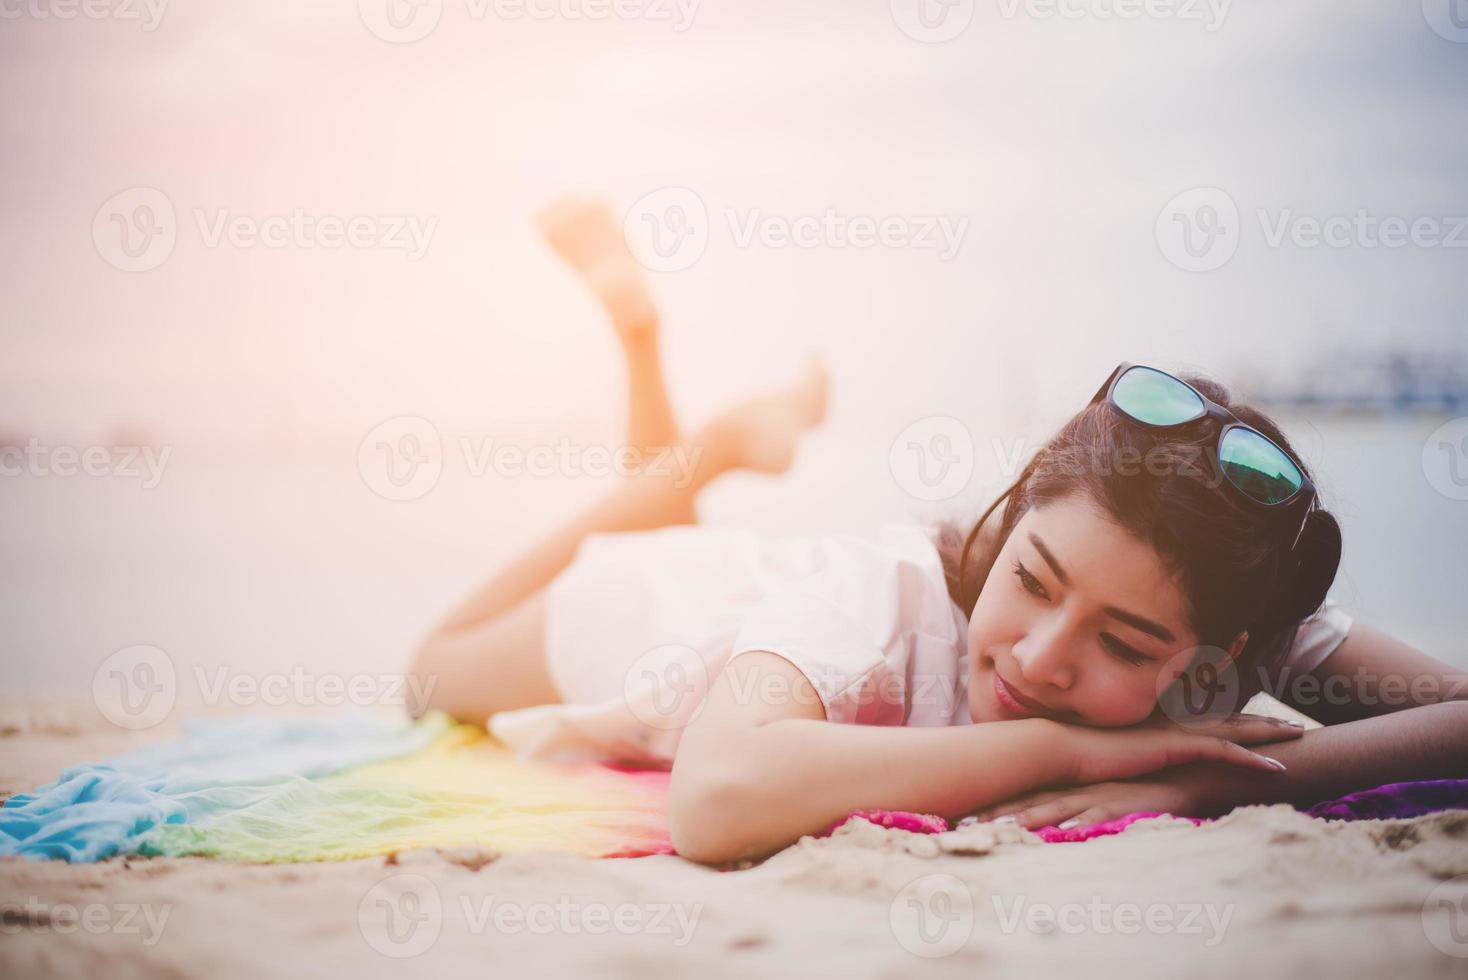 skönhet asiatisk kvinna har semester på stranden. flicka som bär solglasögon och ligger på färgglad matta nära havet. livsstil och lyckligt liv koncept. resa och semester tema. sommar och tropiskt tema foto